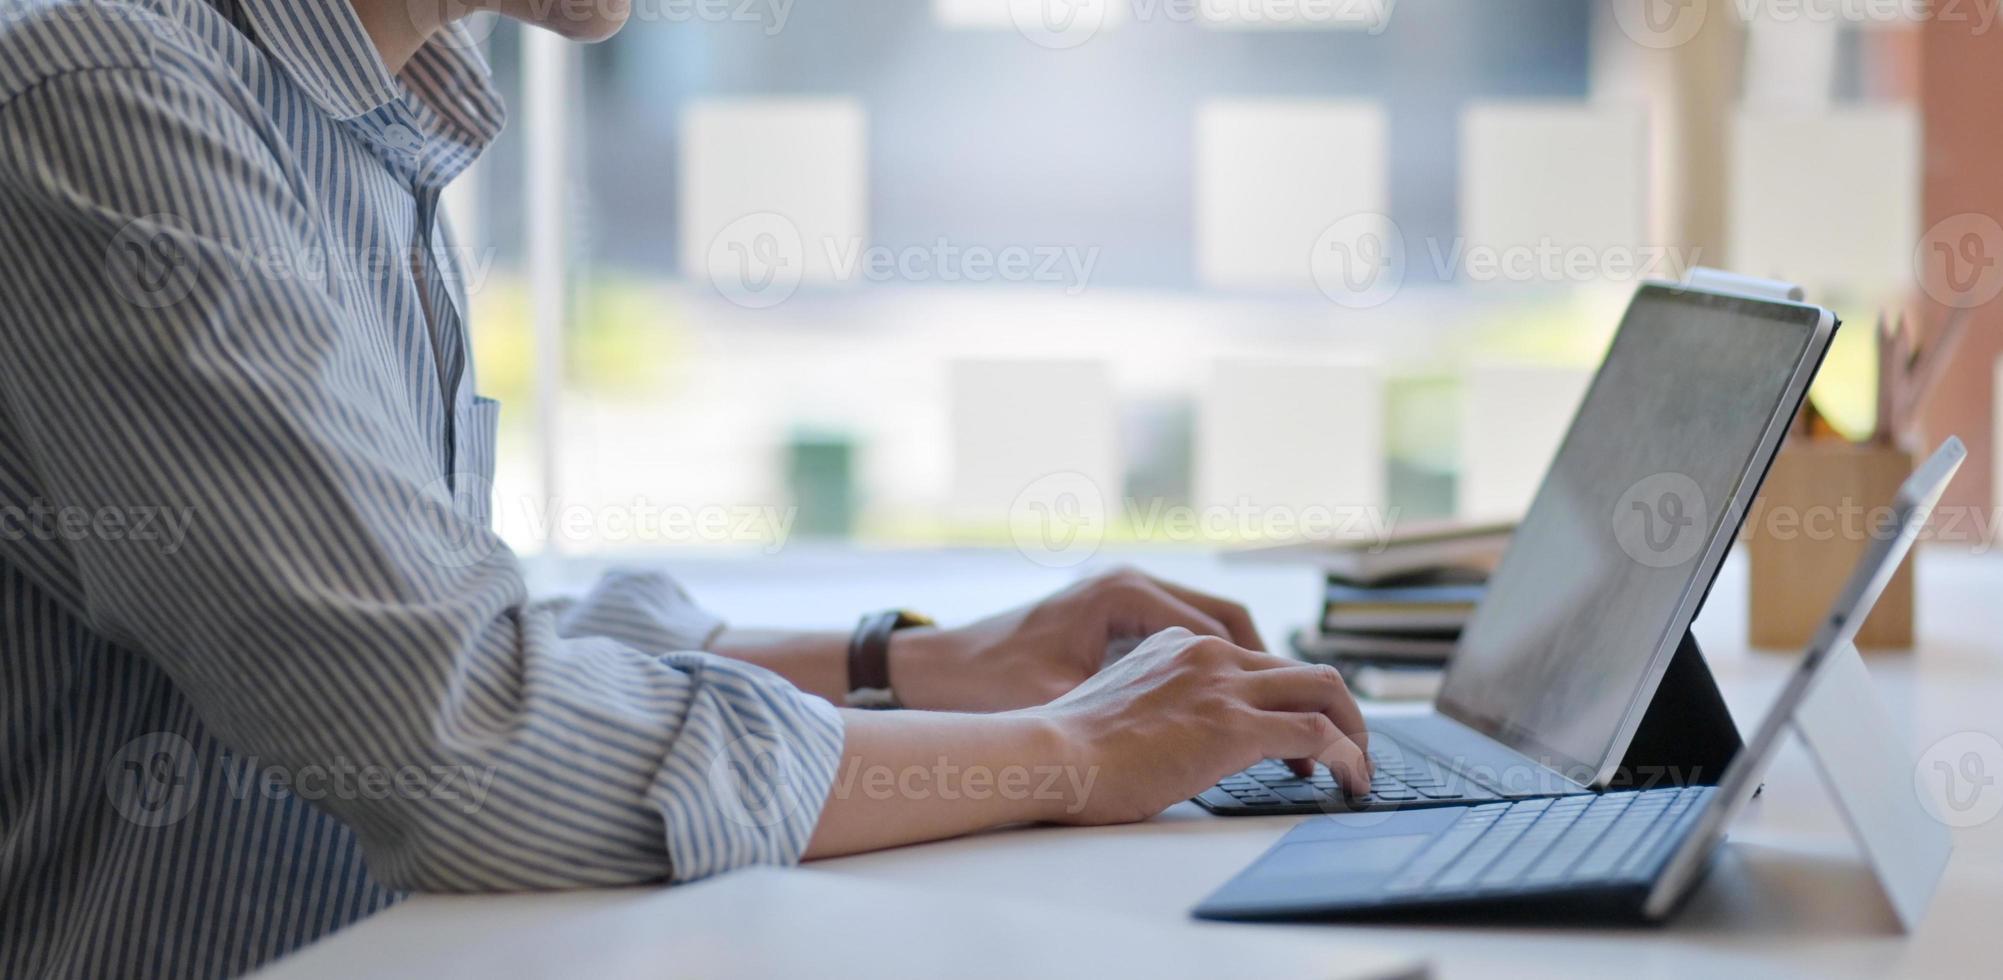 bijgesneden opname van een man met een laptop en digitale tablet in een modern kantoor. foto